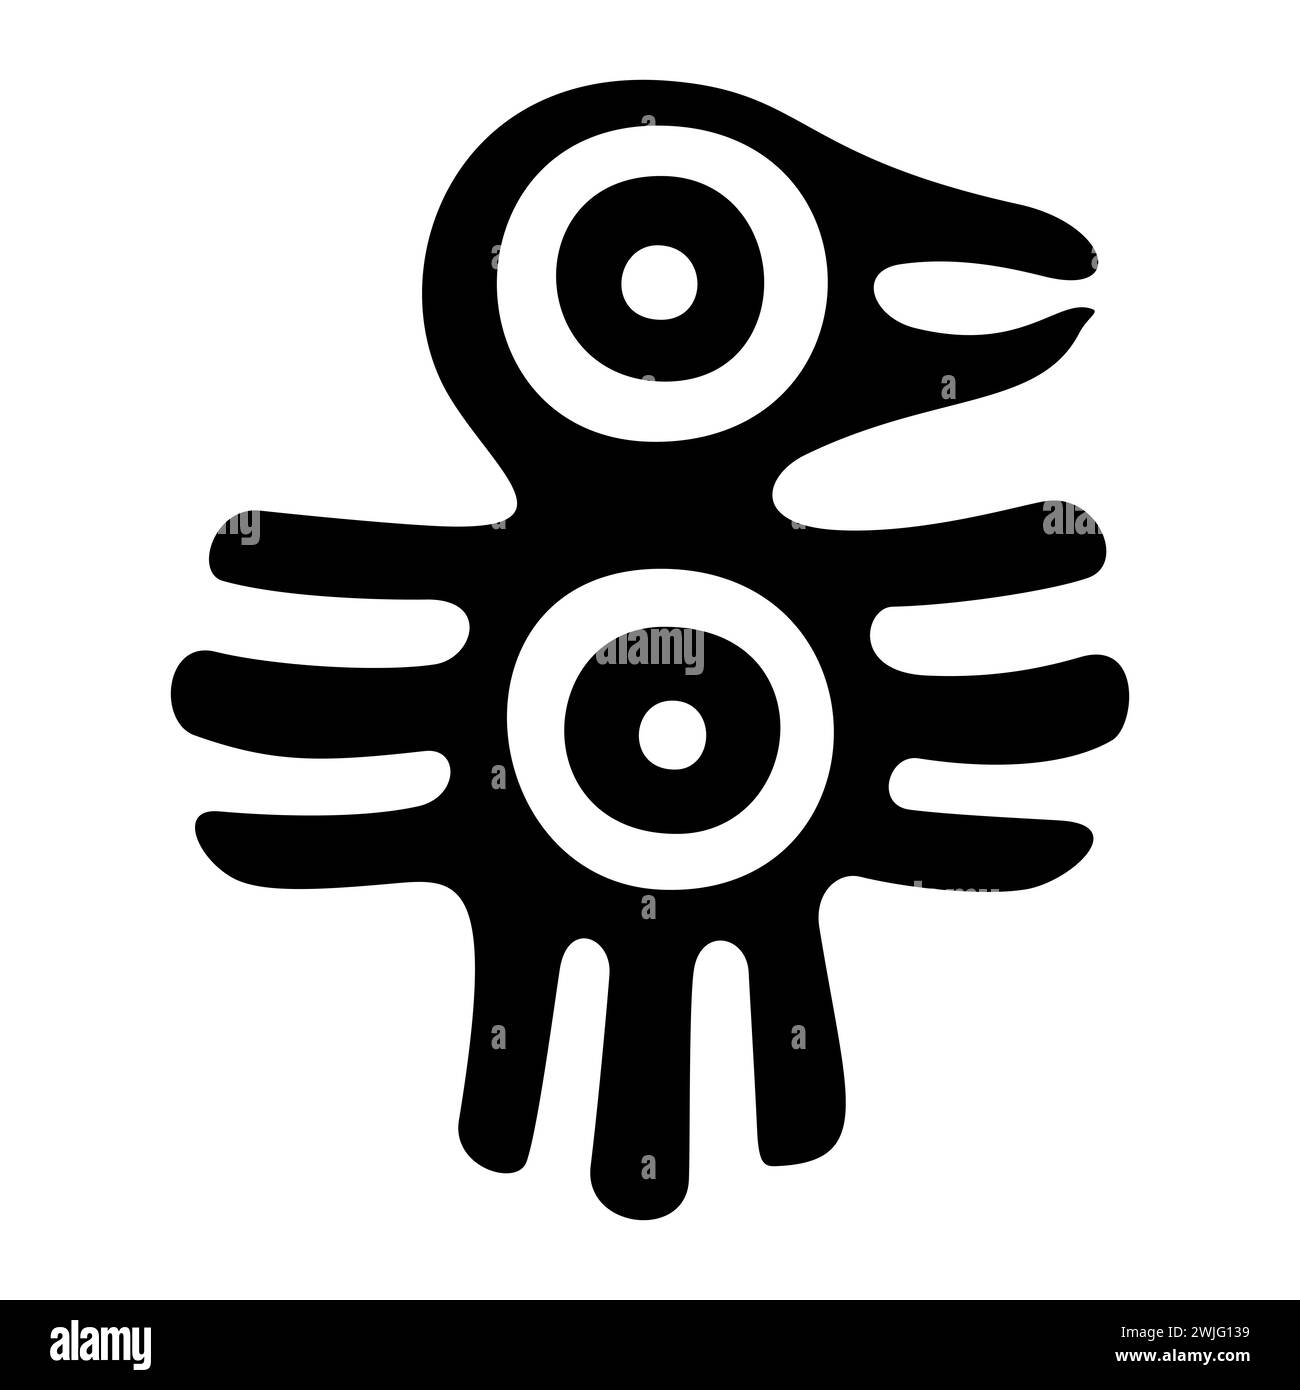 Fantastisches Vogelsymbol des alten Mexiko. Dekoratives aztekisches Flachstempelmotiv, das einen Vogel zeigt, wie er im präkolumbianischen Tenochtitlan gefunden wurde. Stockfoto